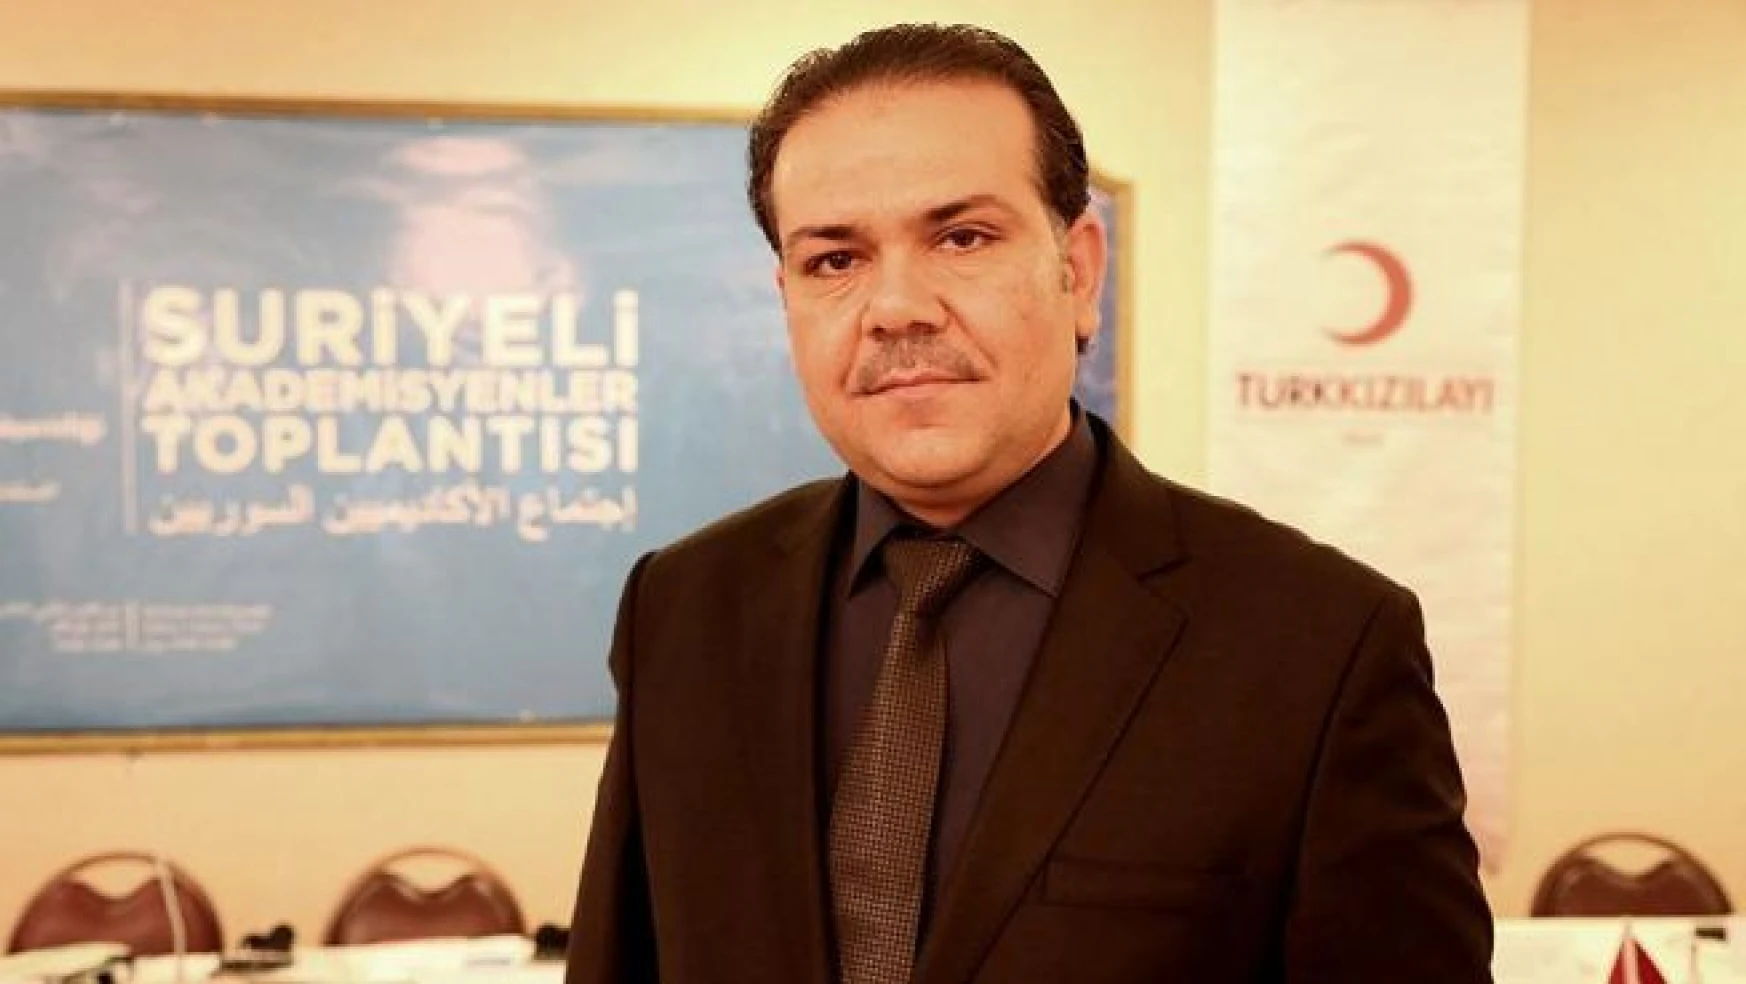 Suriyeli 'sığınmacı akademisyenlerin' umudu Türkiye